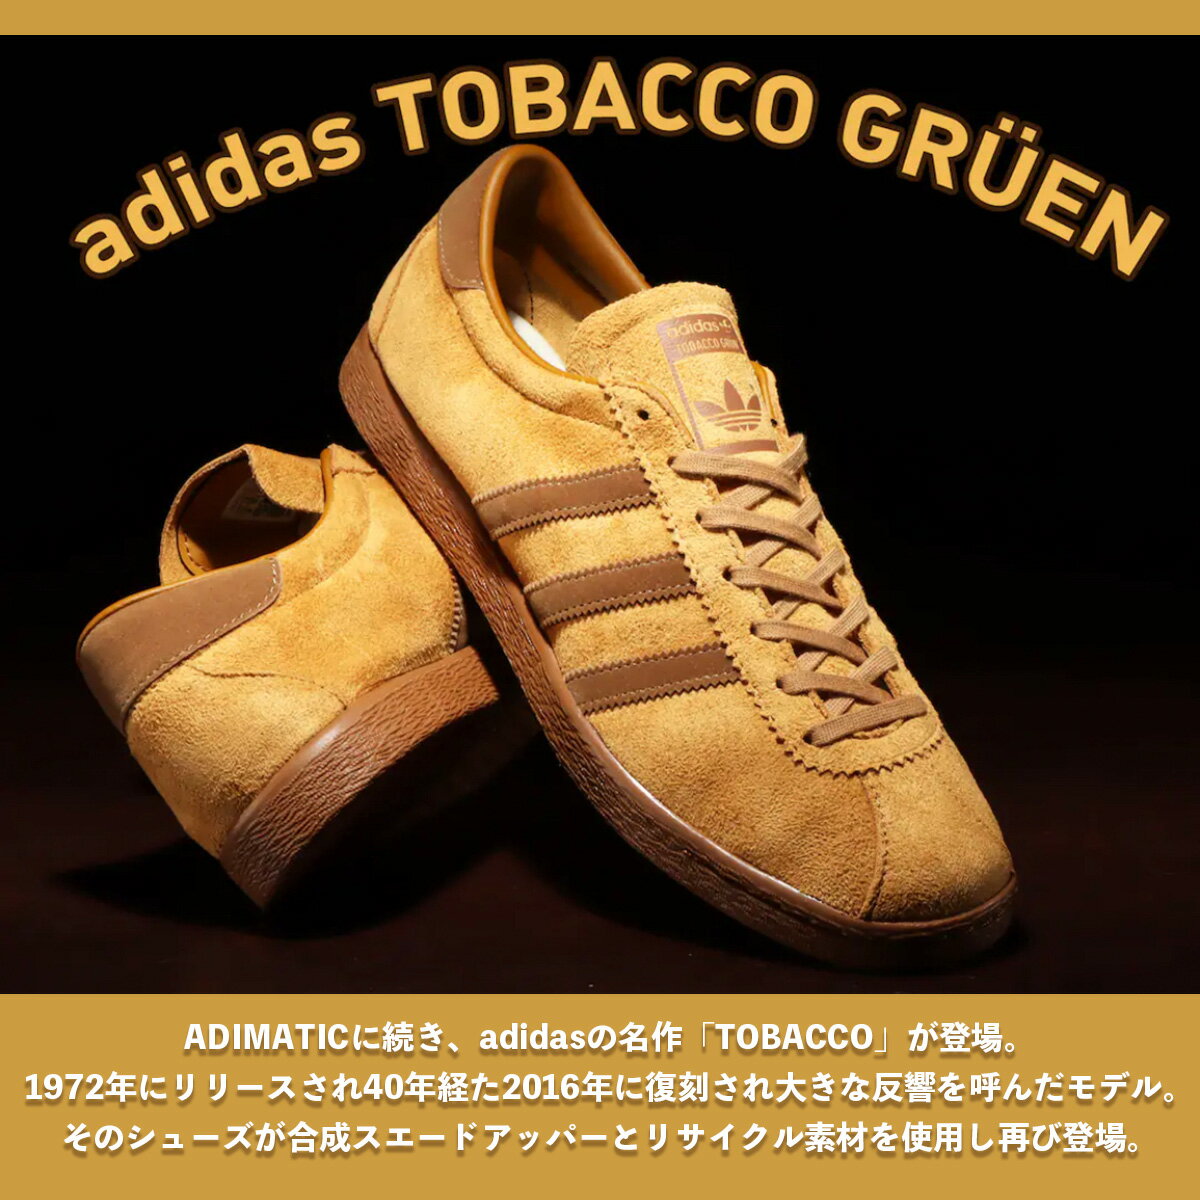 メンズ靴, スニーカー adidas TOBACCO GRUEN( GRUEN)MESABROWN DESARTWILD BROWN 22SS-S